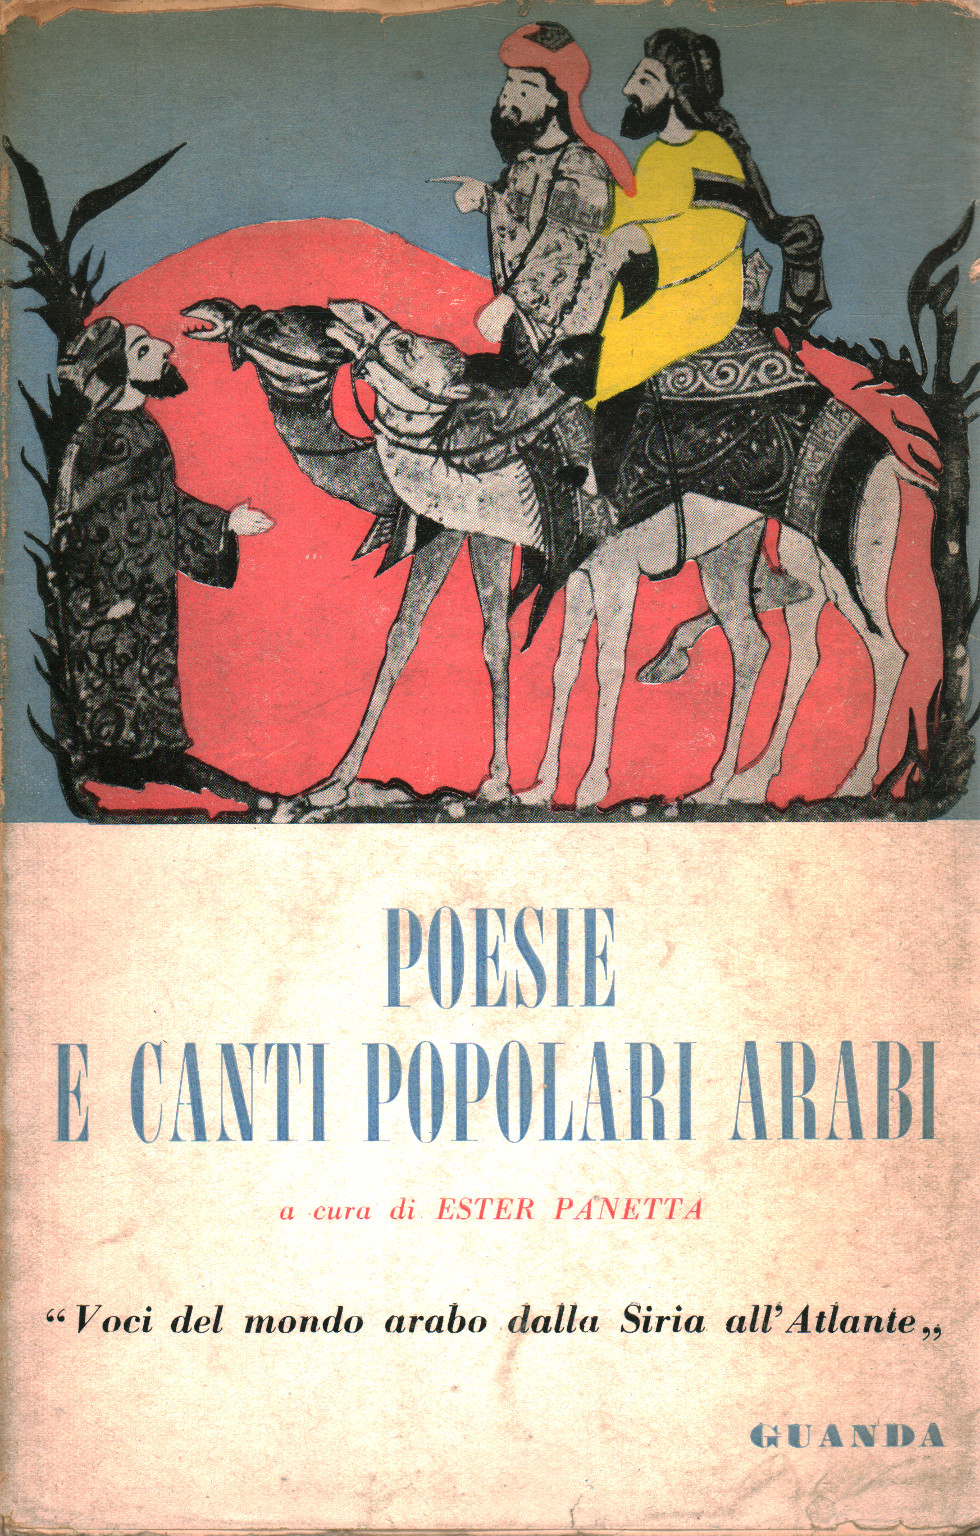 Poesie e canti popolari arabi, s.a.